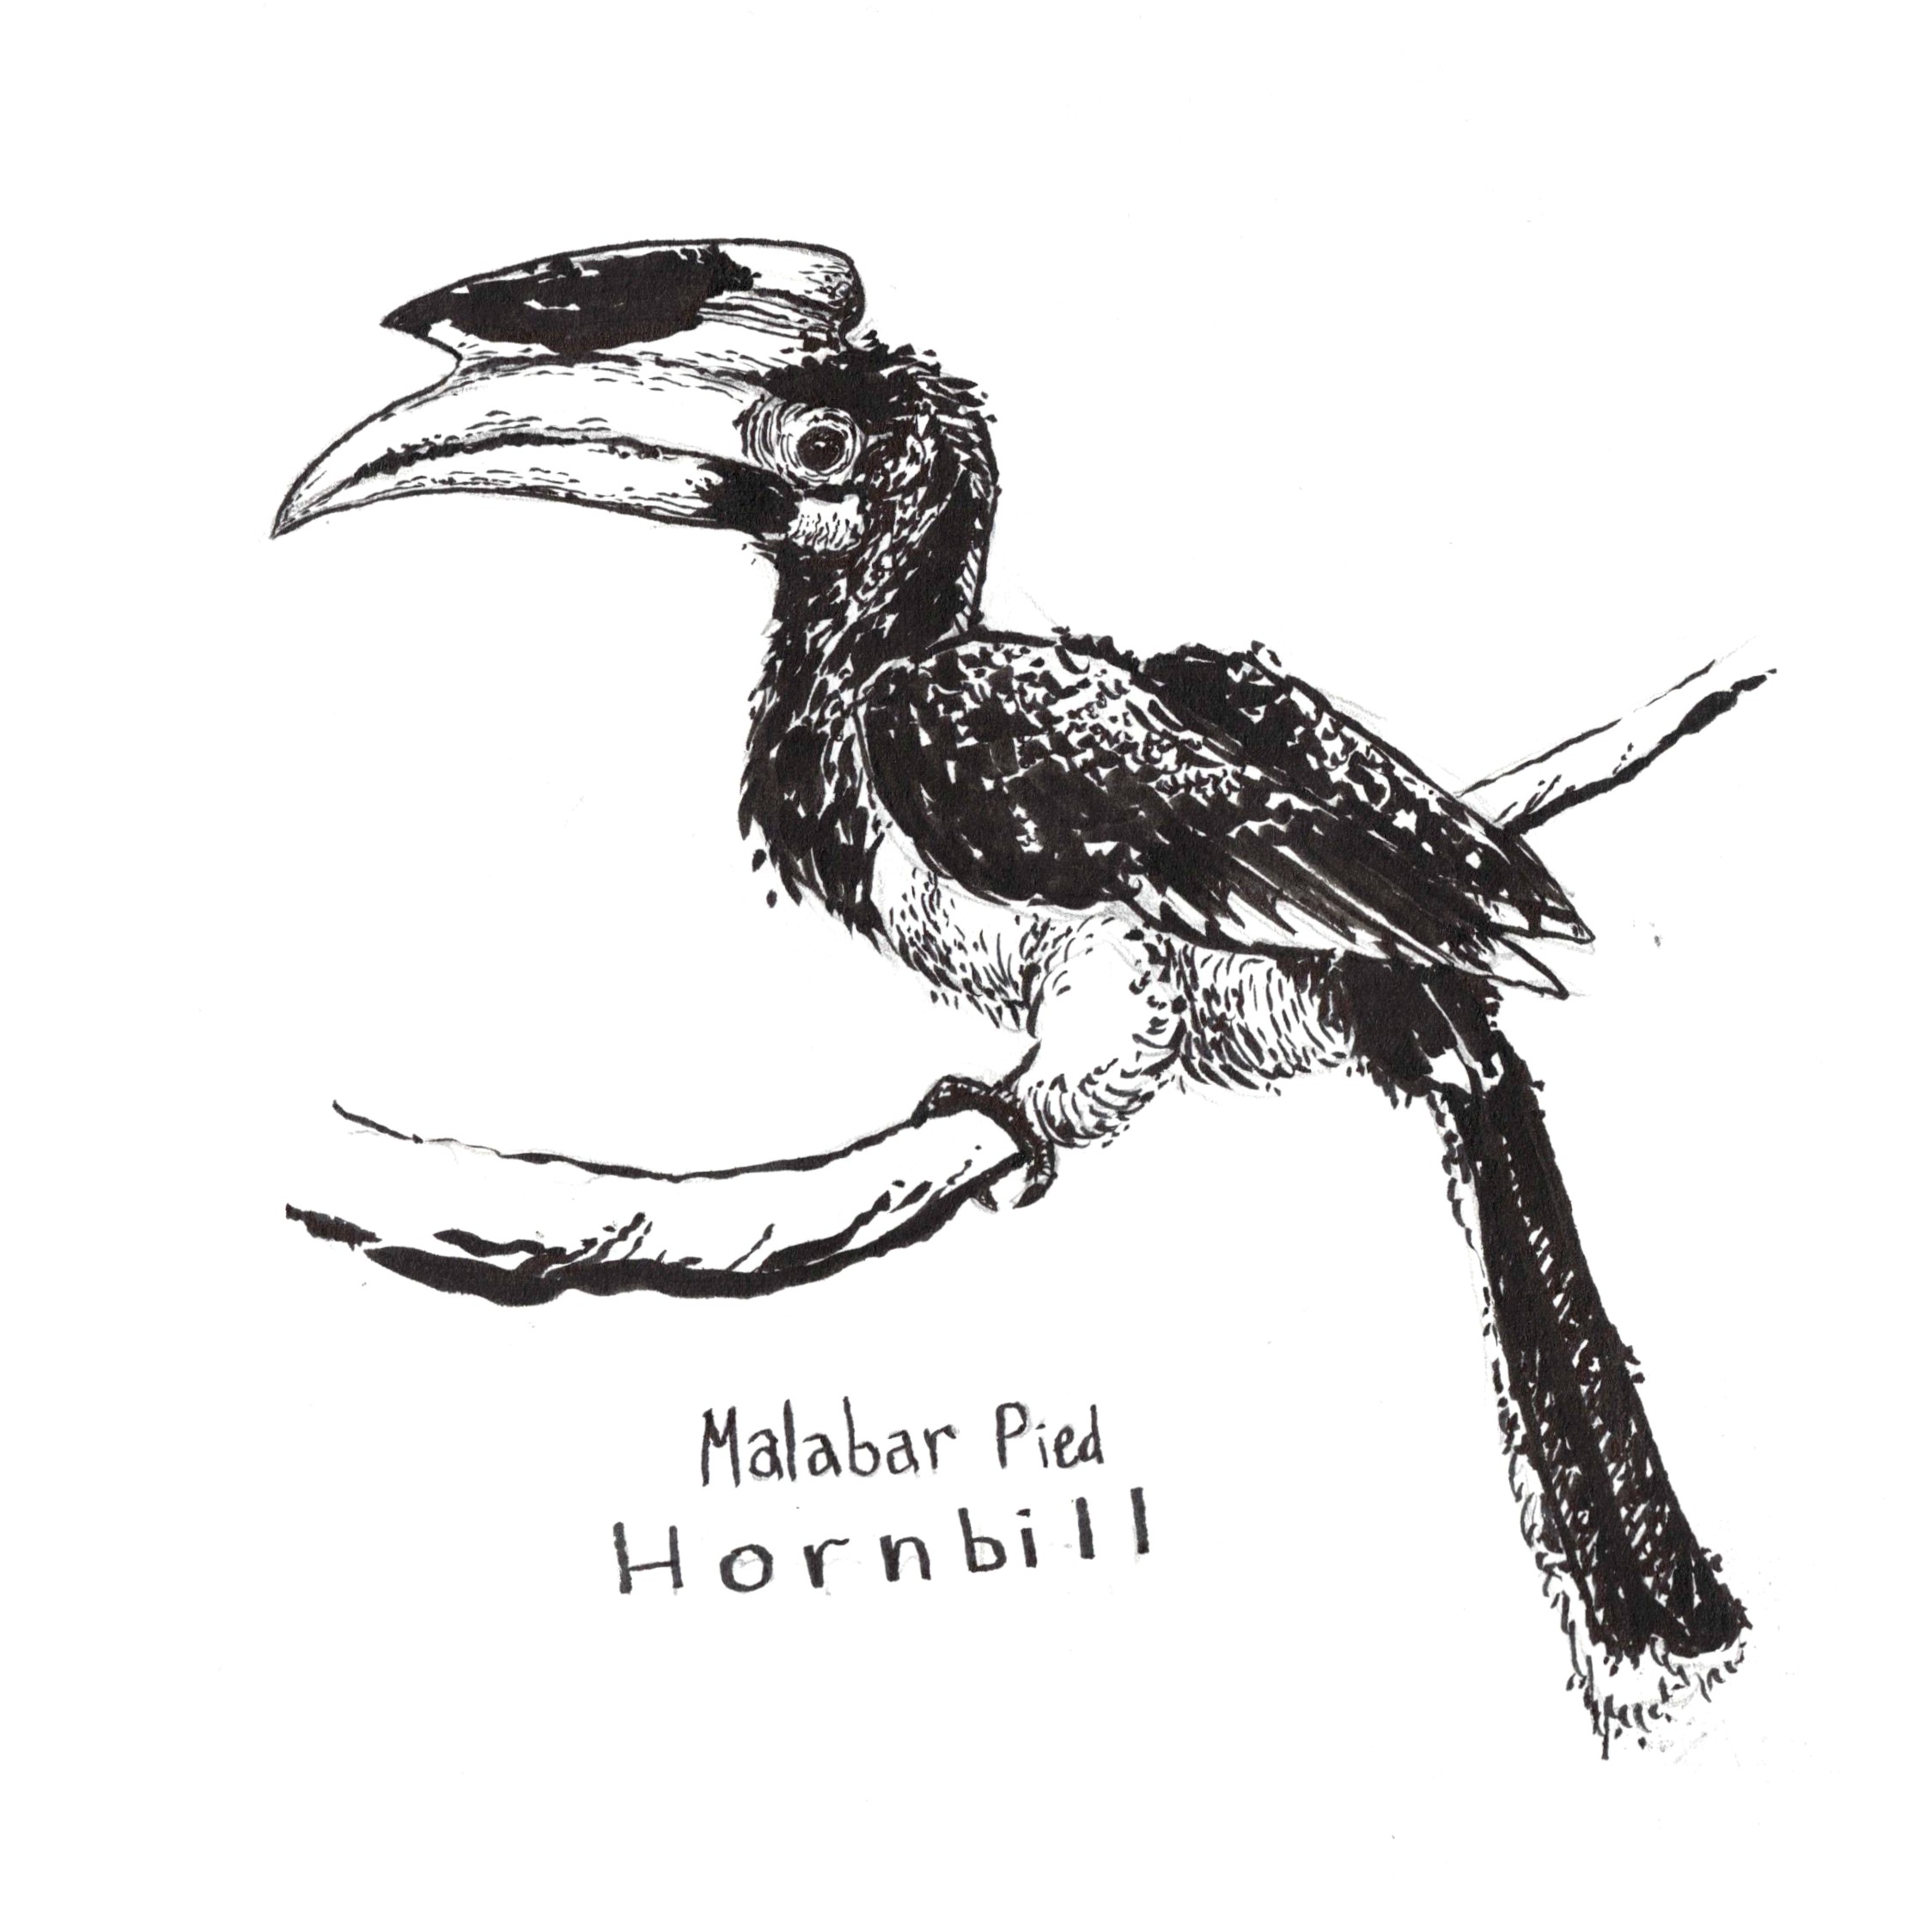 Hornbill - Wikipedia